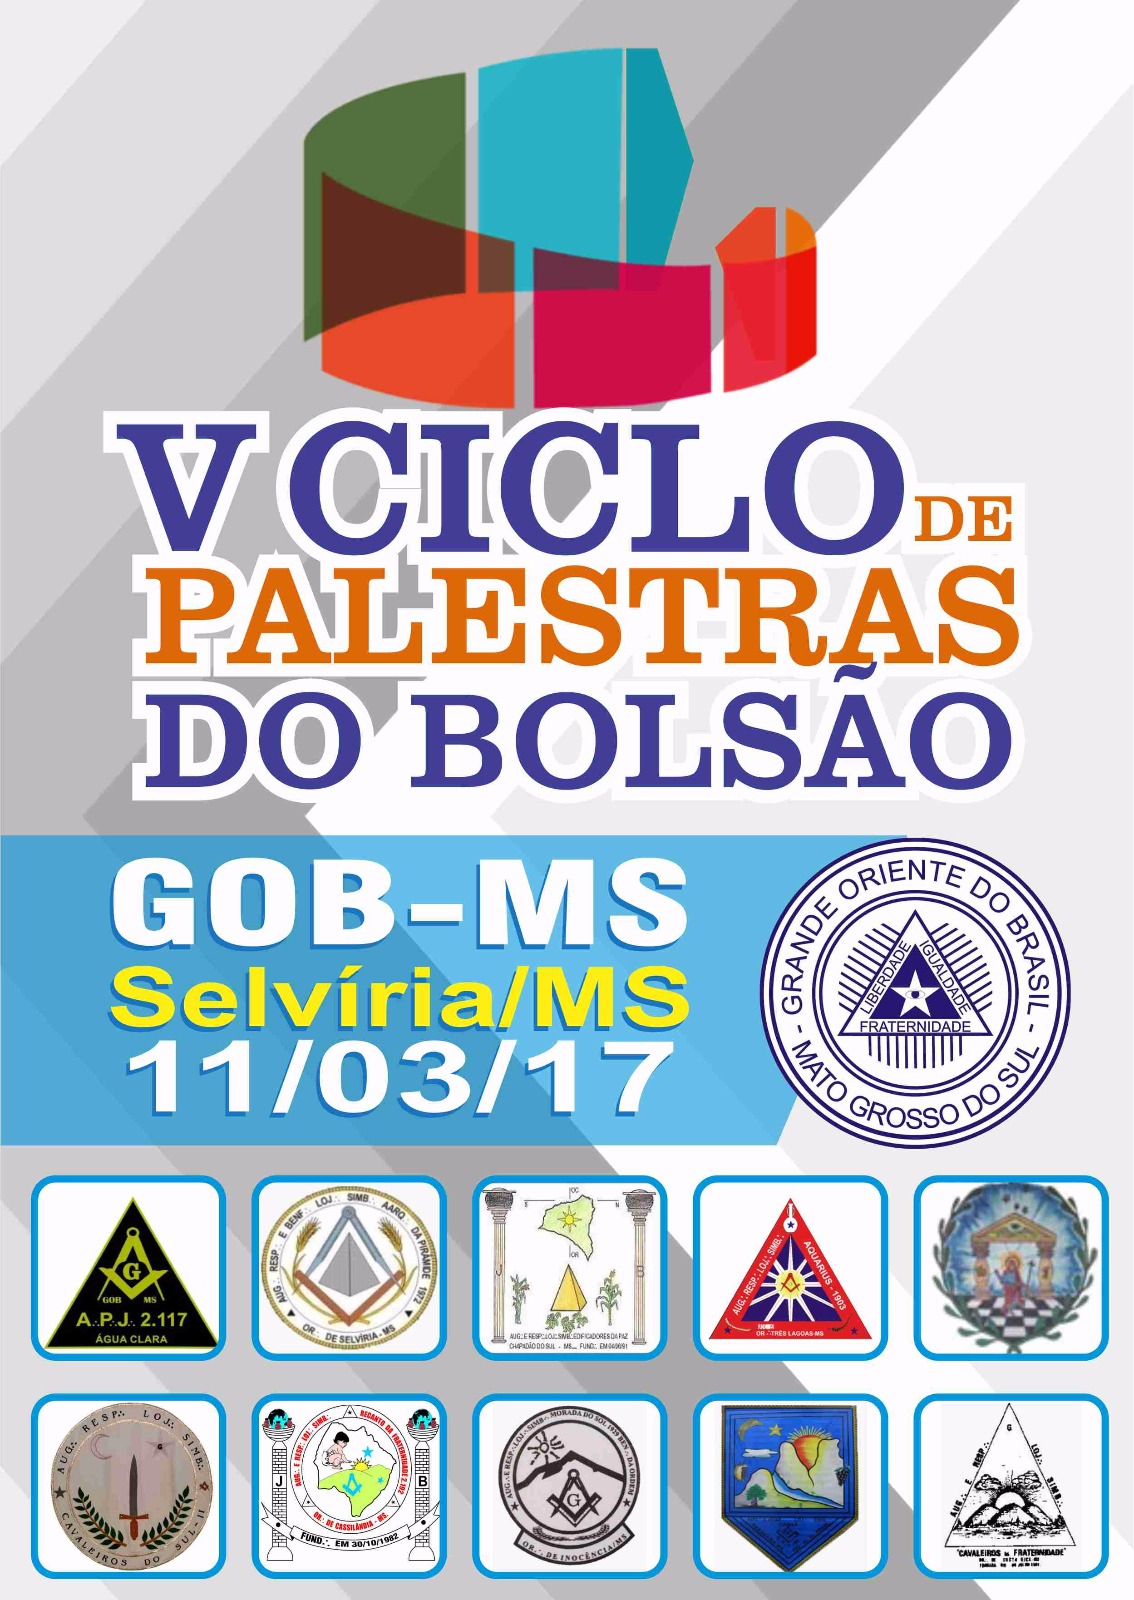 You are currently viewing V CICLO DE PALESTRAS DO BOLSÃO